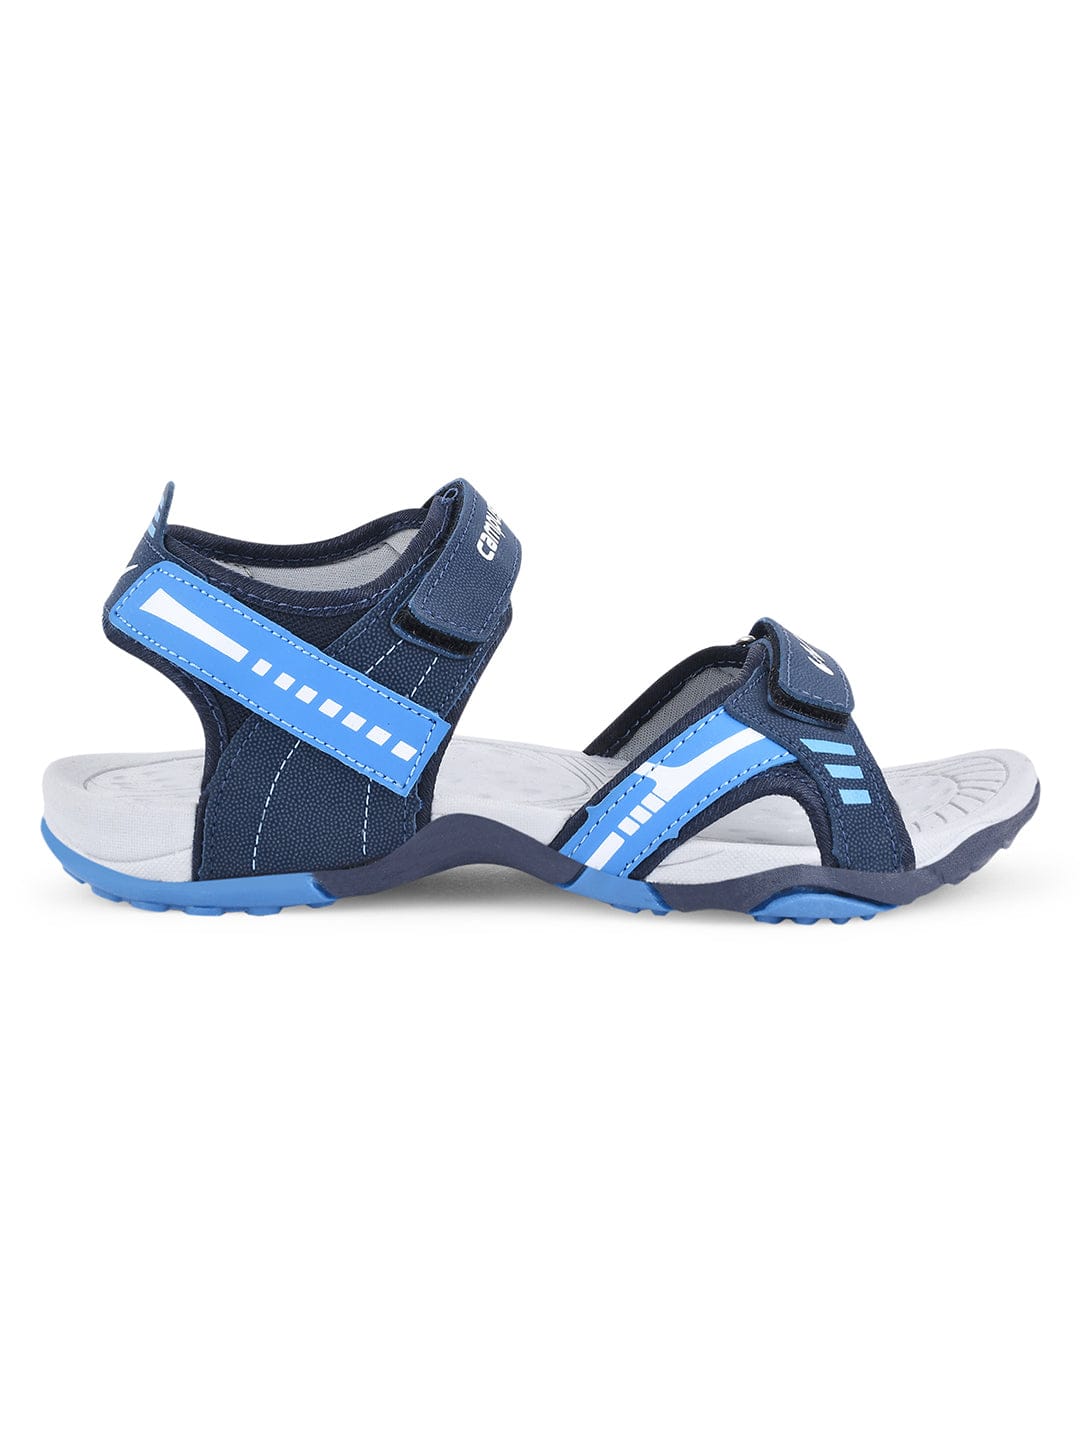 Sparx Men Navy, Blue Sandals - Buy Sparx Men Navy, Blue Sandals Online at  Best Price - Shop Online for Footwears in India | Flipkart.com